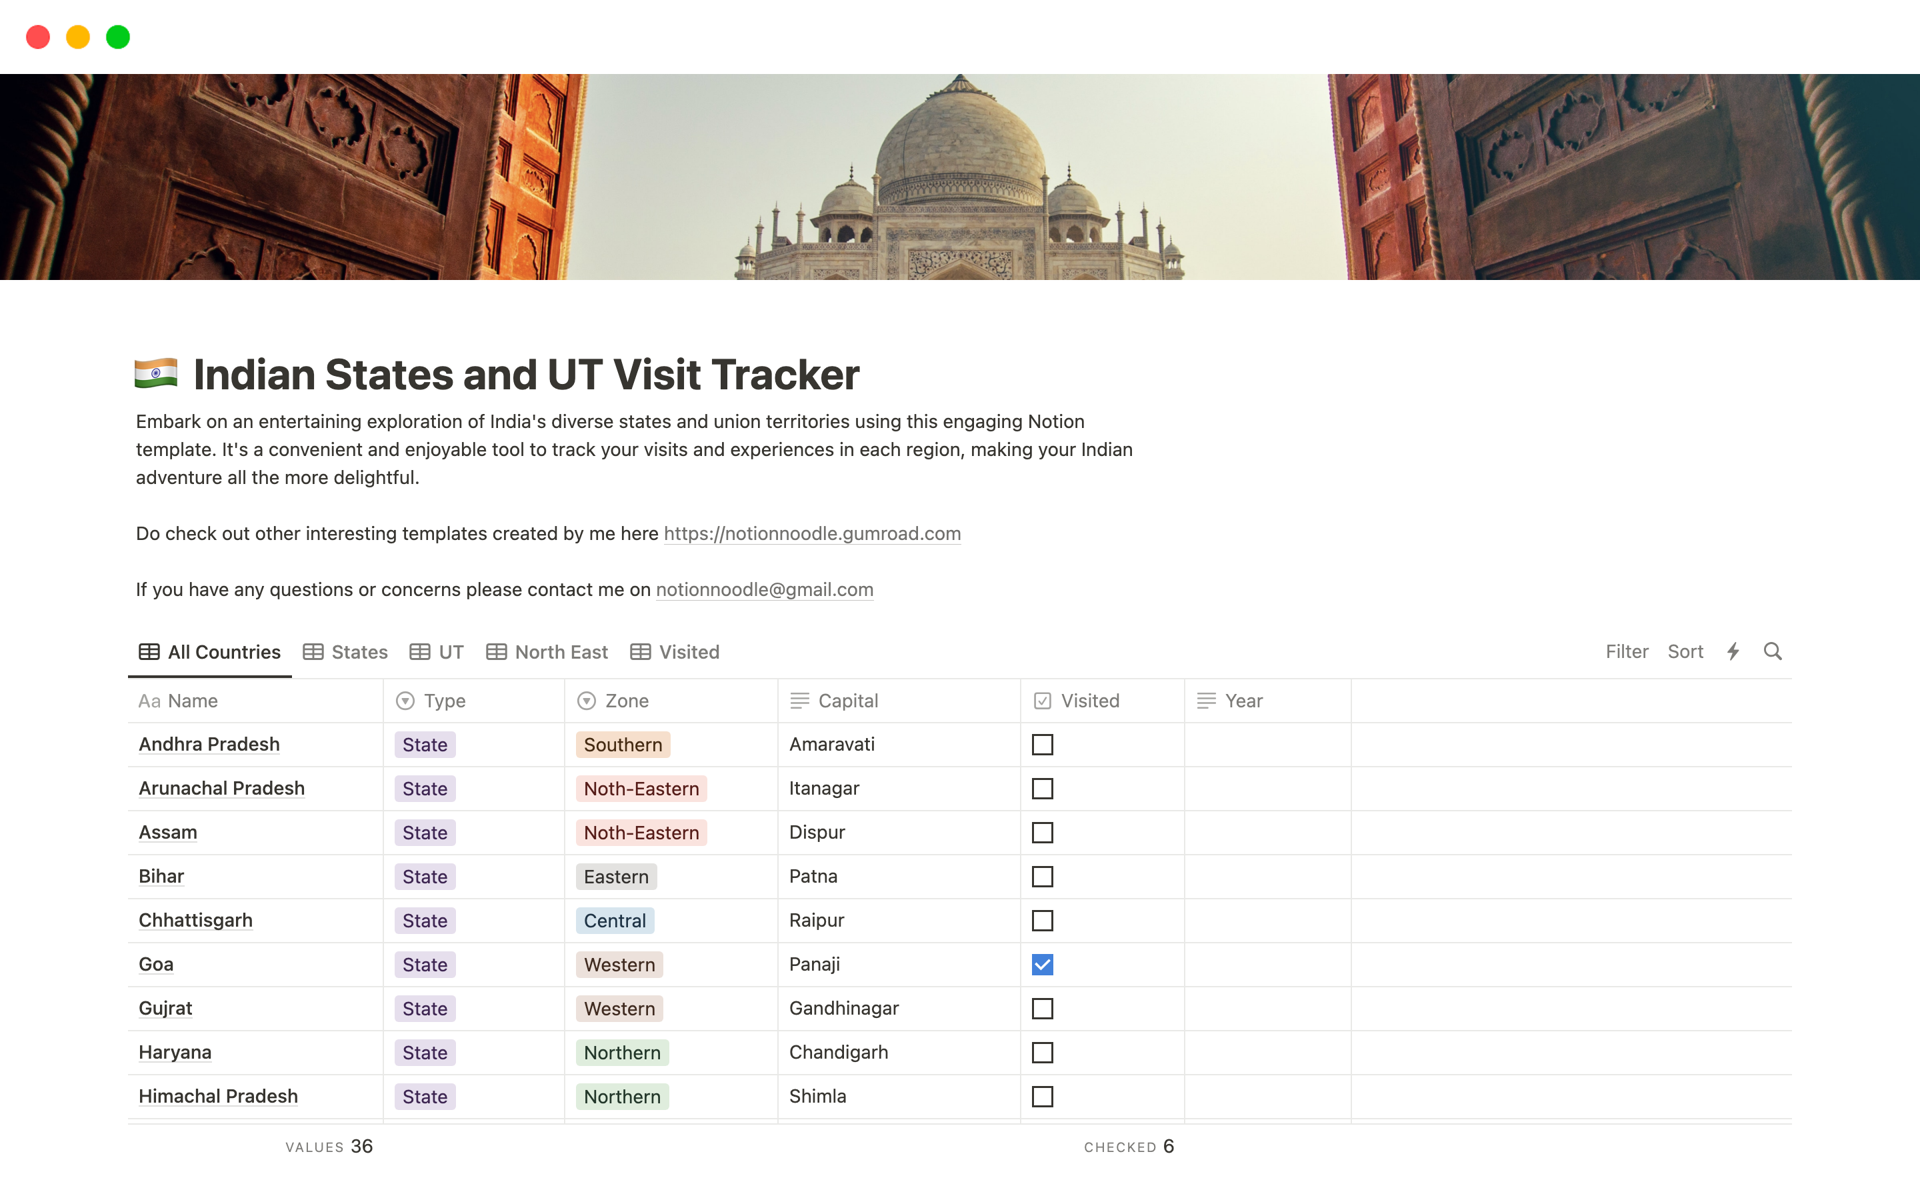 Aperçu du modèle de Indian States and UT Visit Tracker